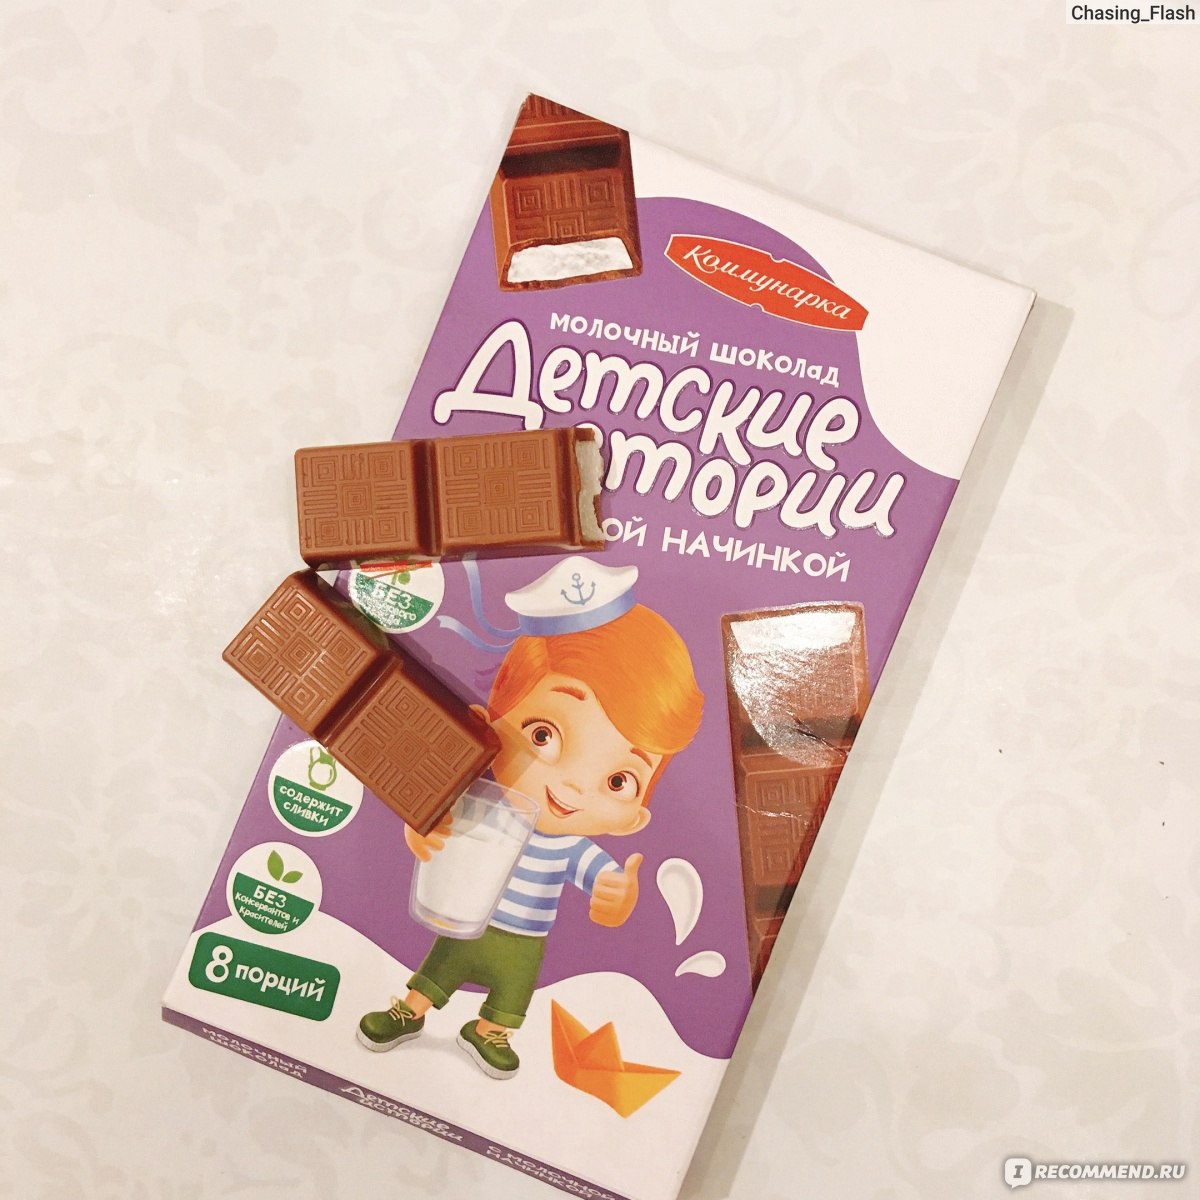 Стоит ли начинать давать детям шоколадные конфеты? И как правильно выбрать настоящий шоколад?